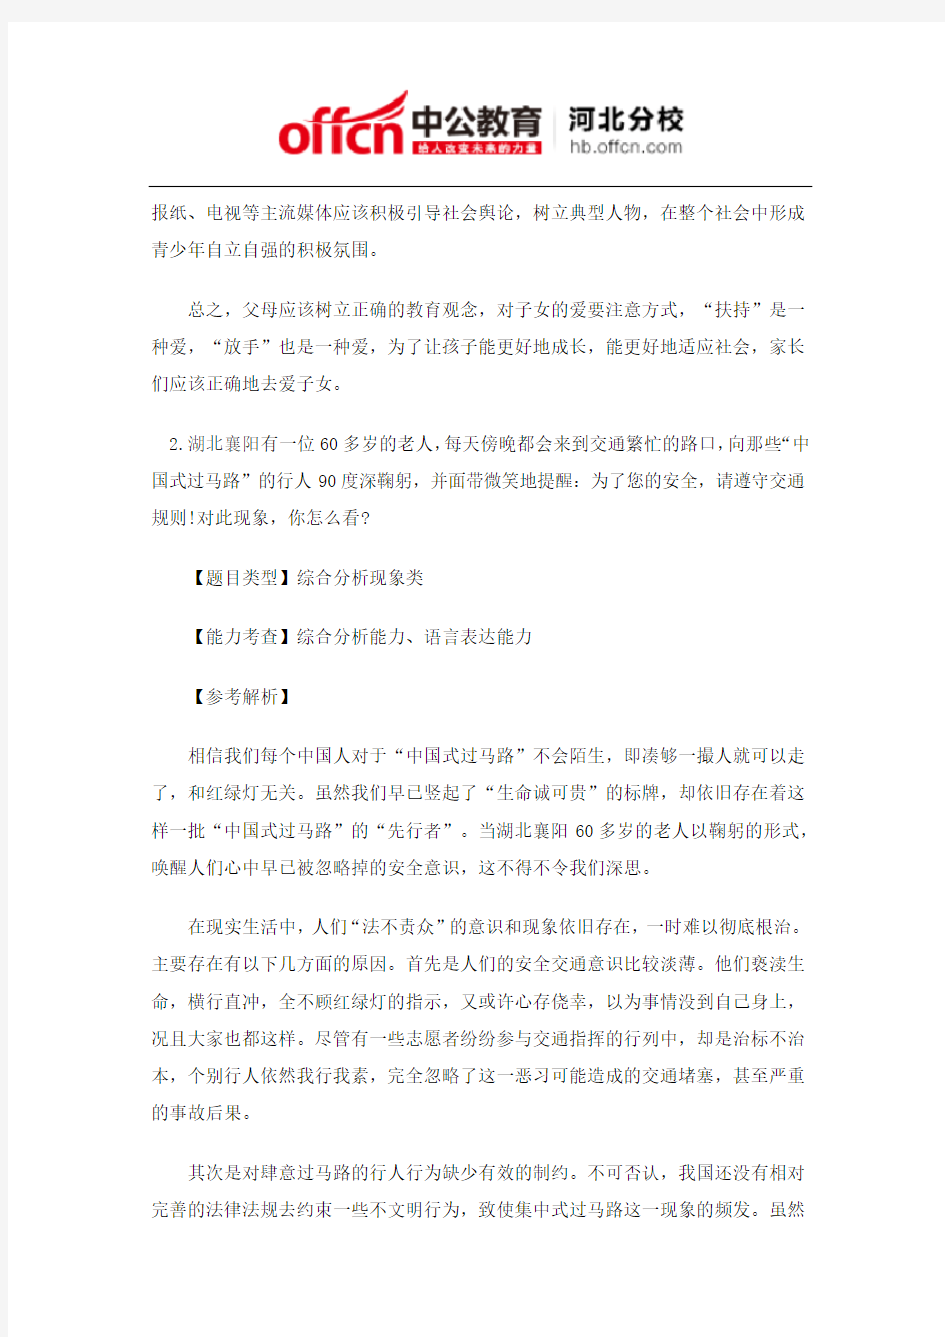 2015年5月24日上午河北省公务员考试面试真题